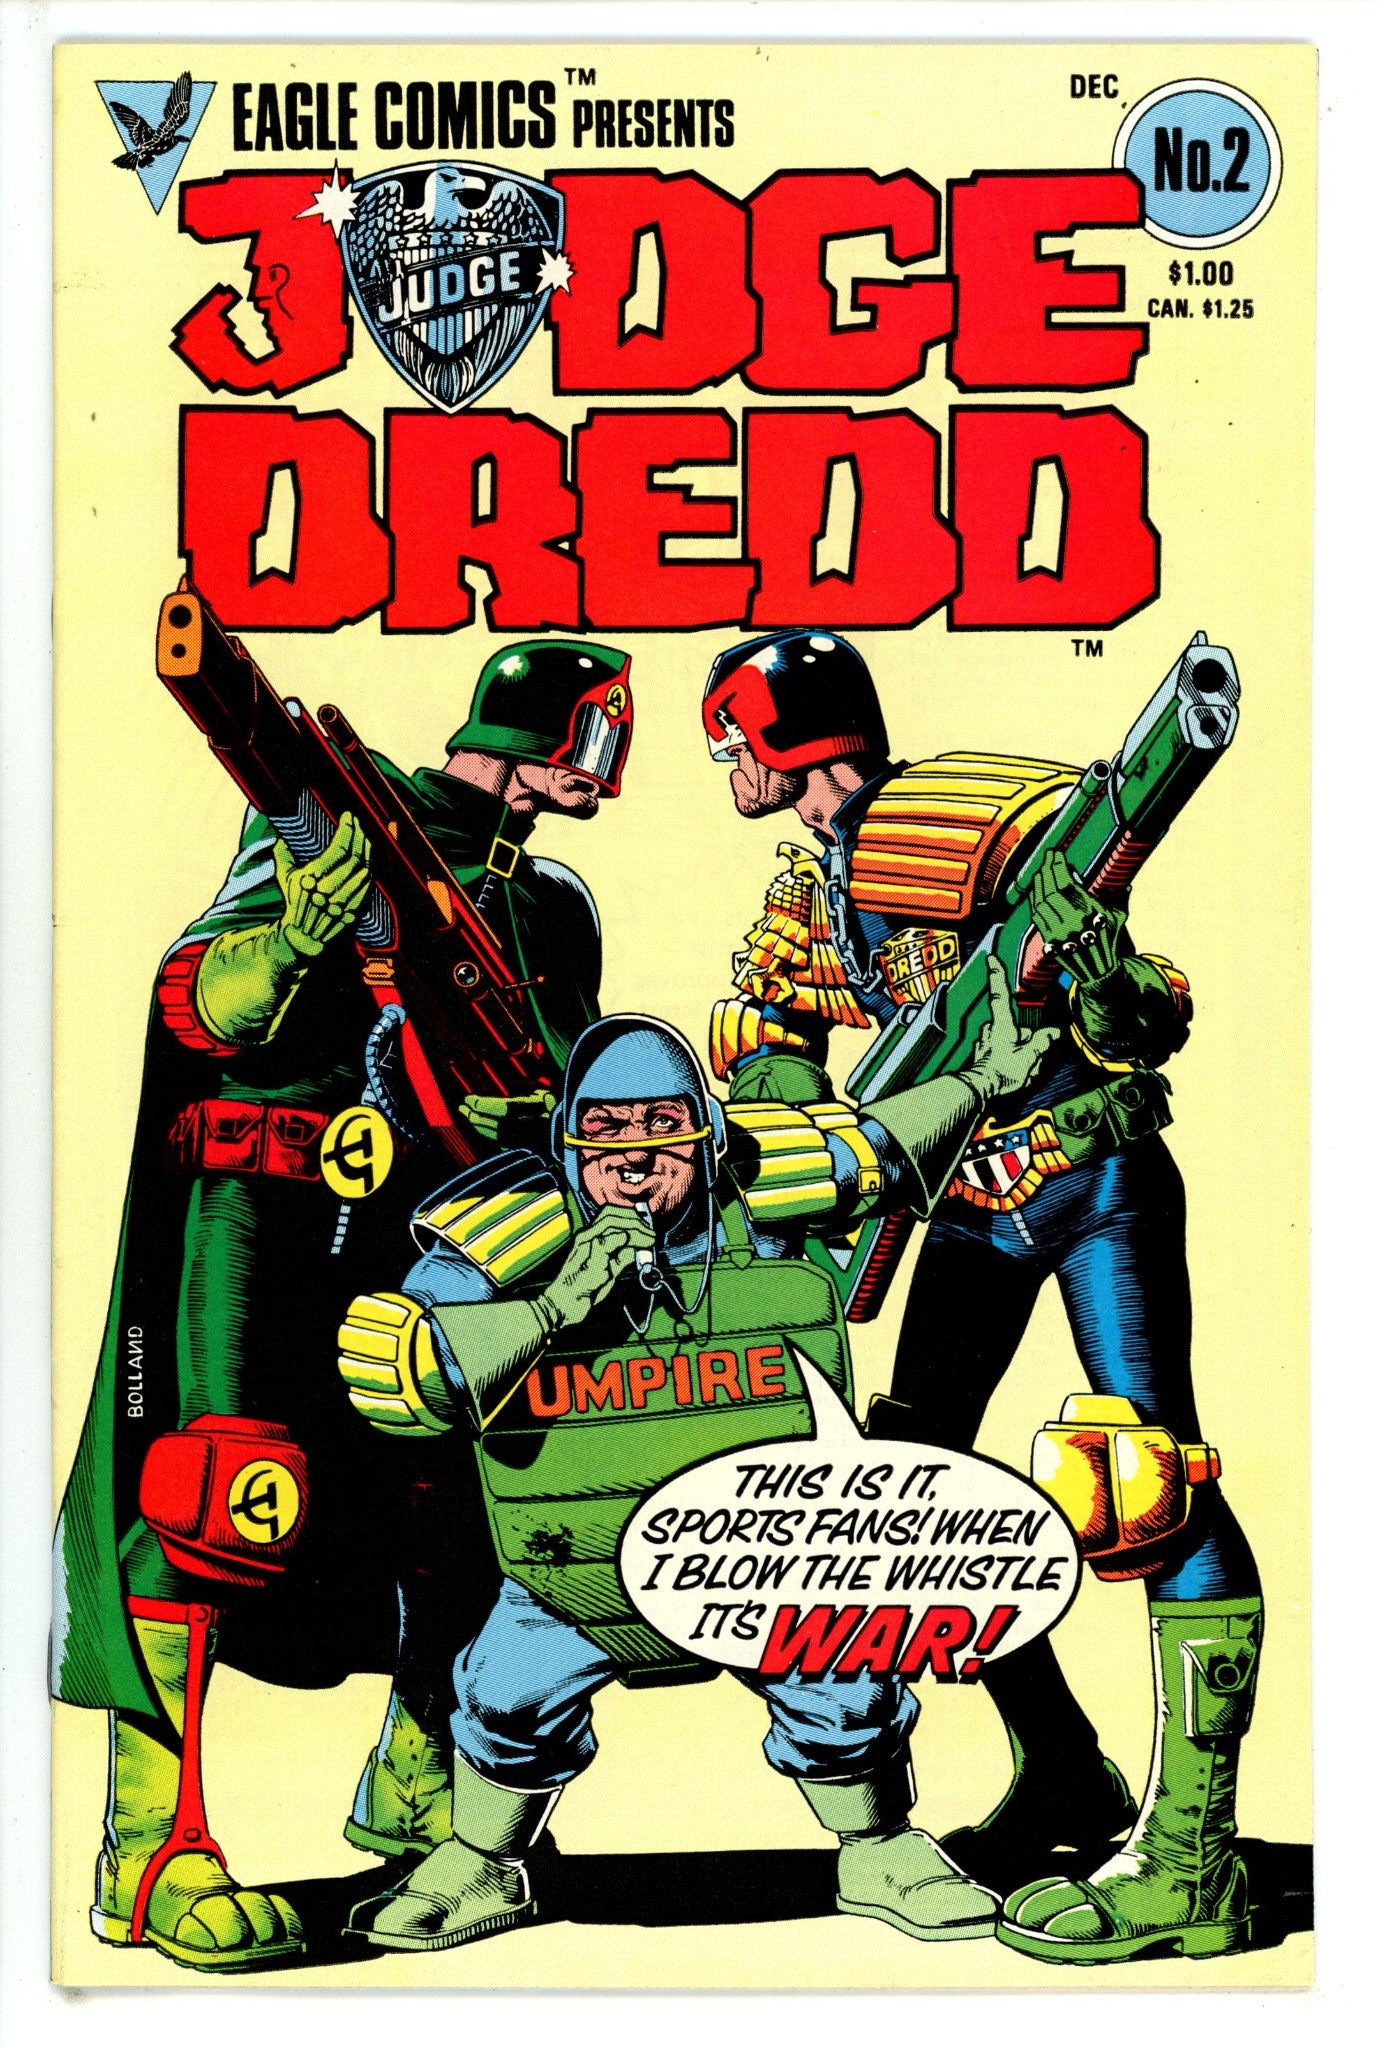 Judge Dredd Vol 1 2 (1983)